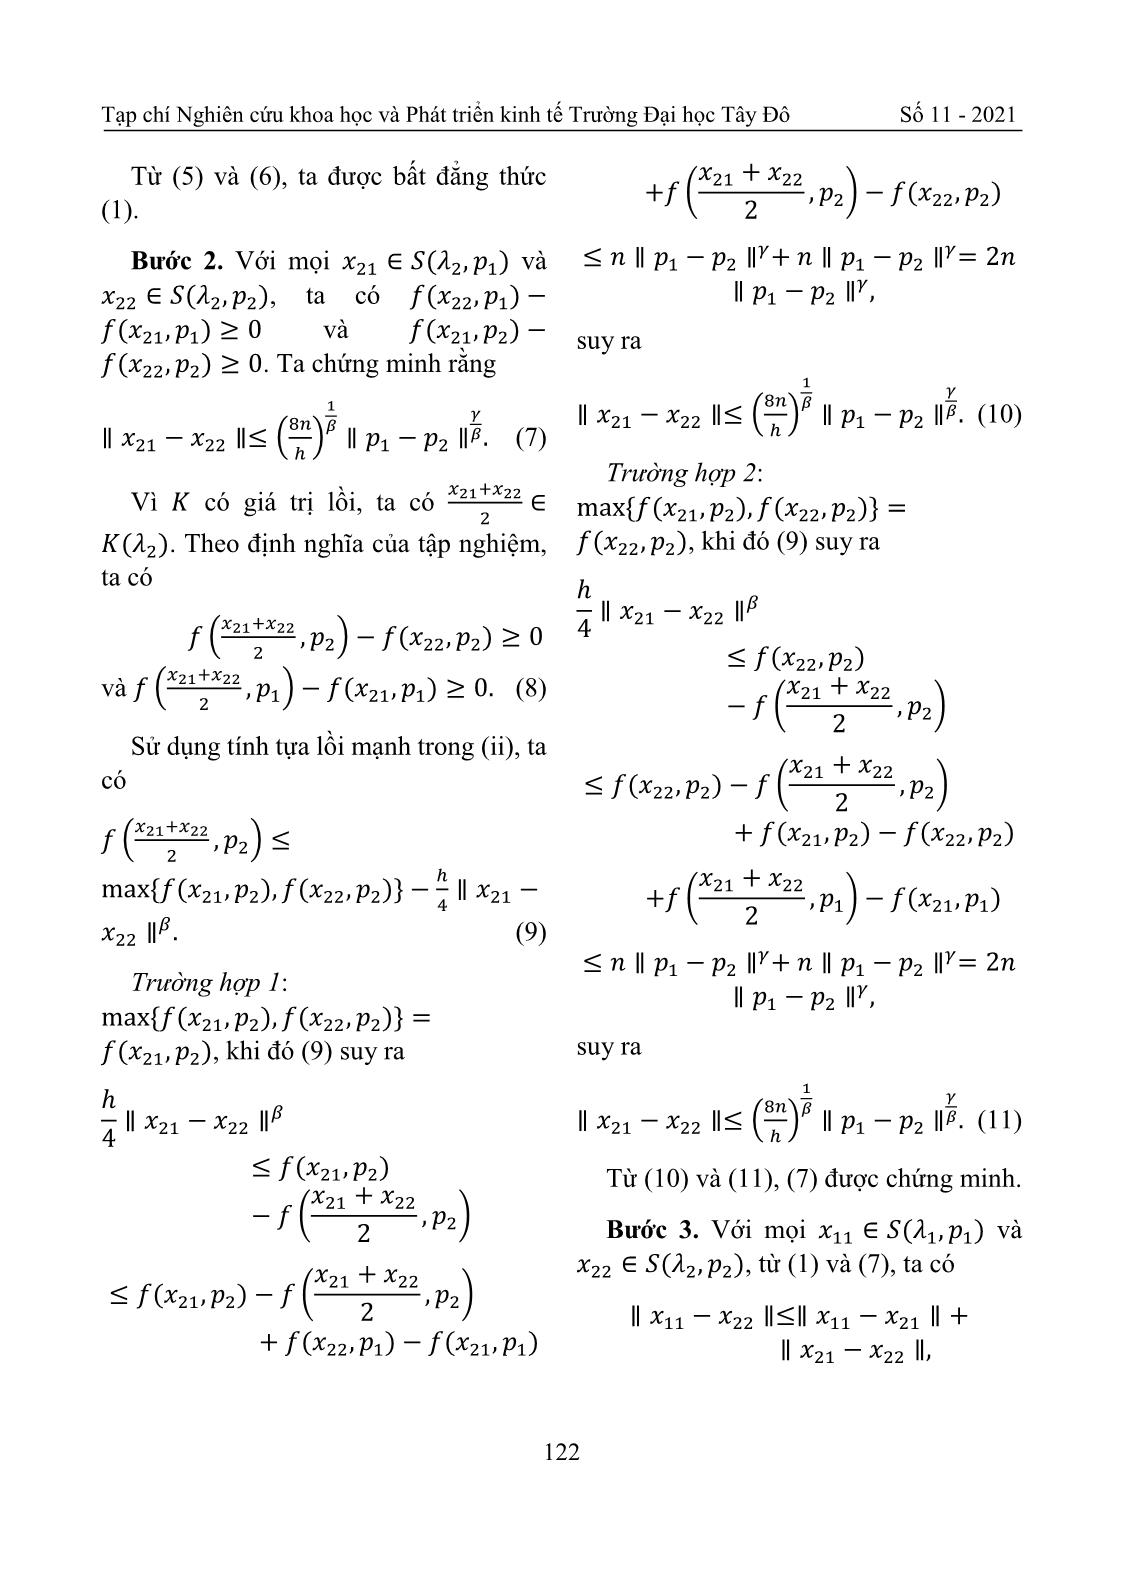 Tính liên tục Holder của ánh xạ nghiệm bài toán cực tiểu hóa có điều kiện trang 6